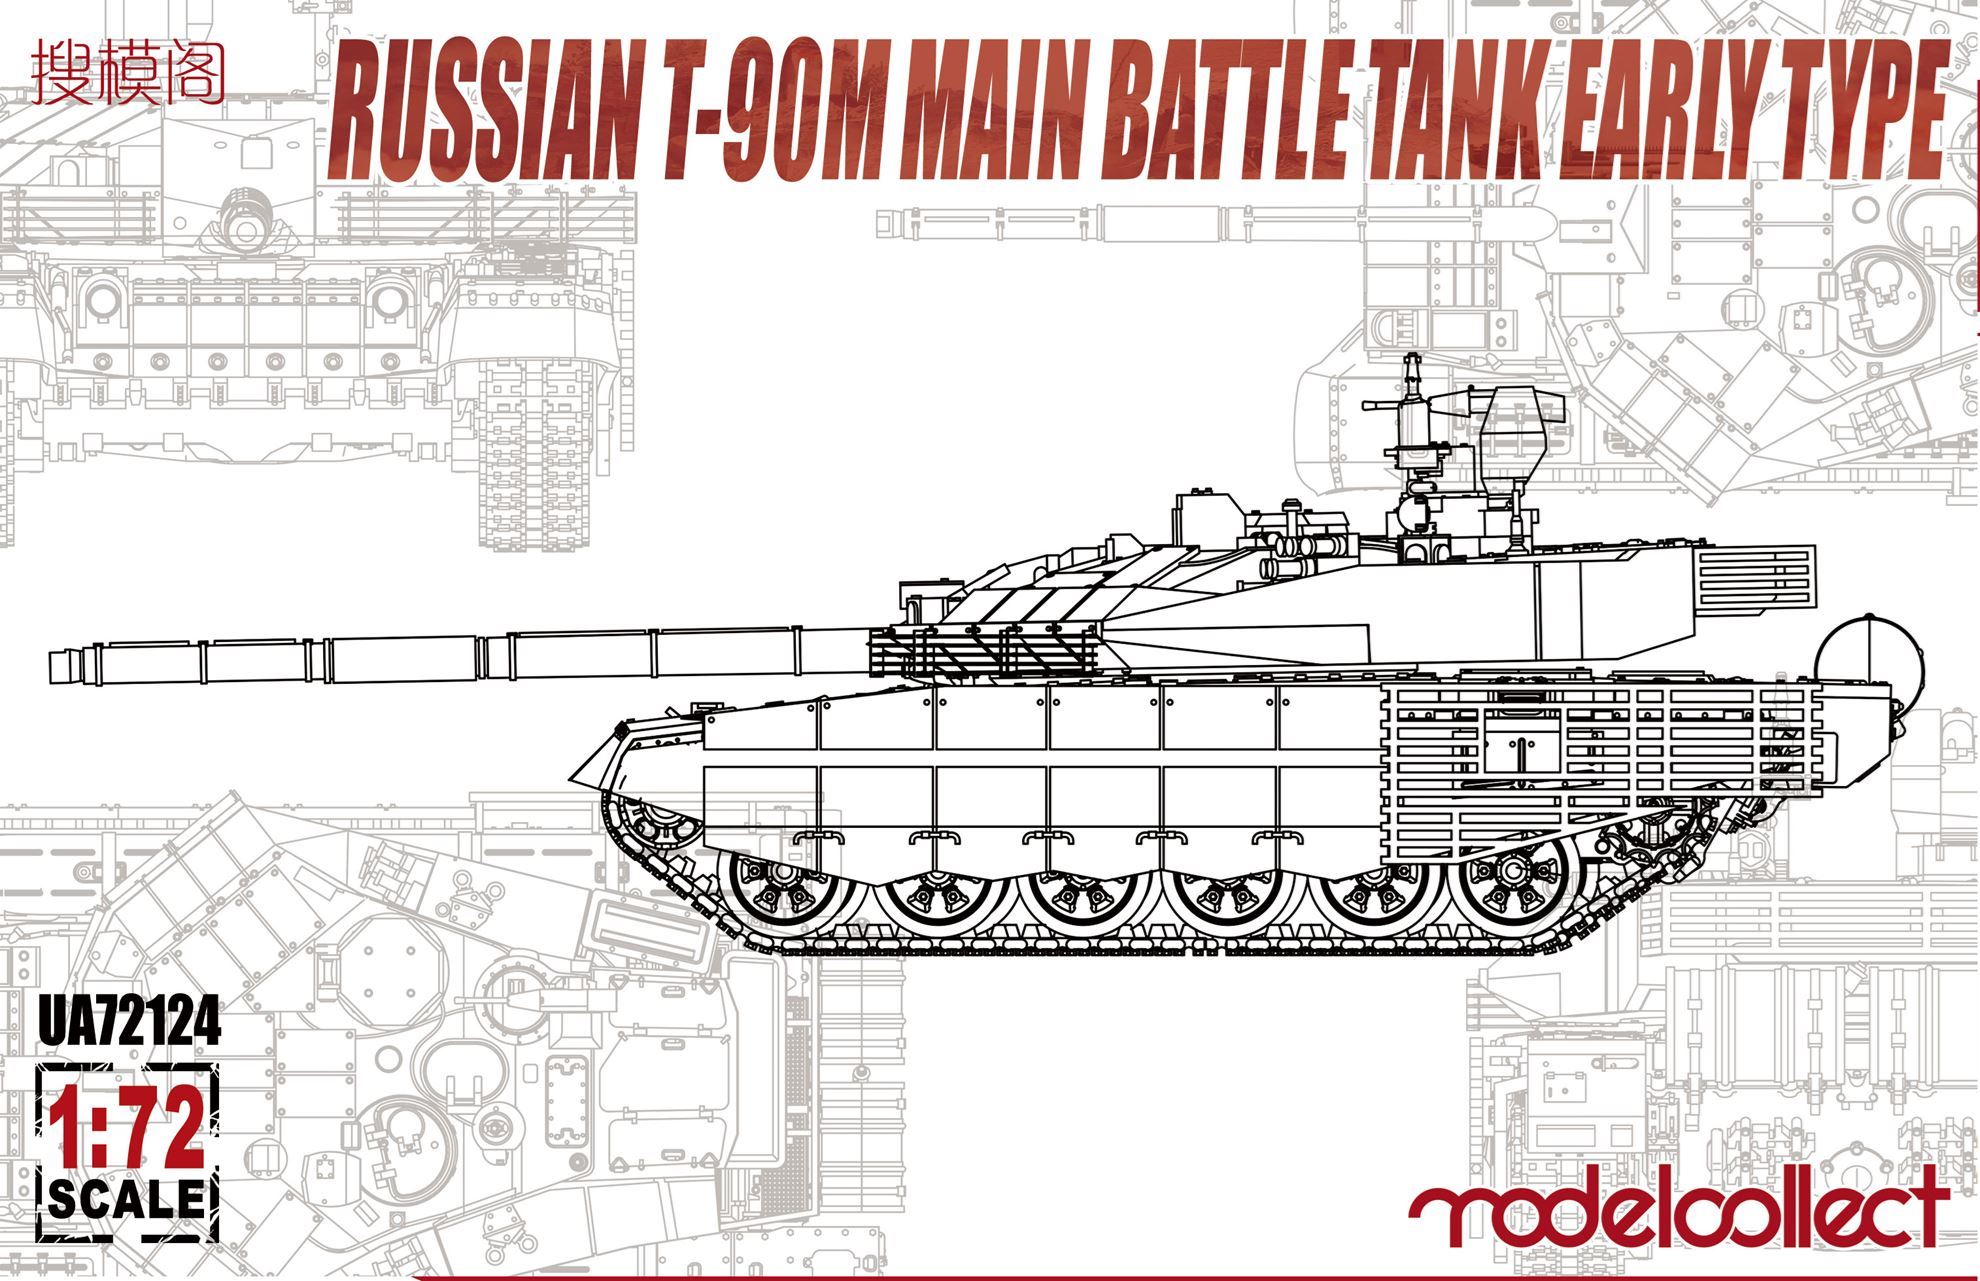 Russian T-90M Main Battle Tank - Early type